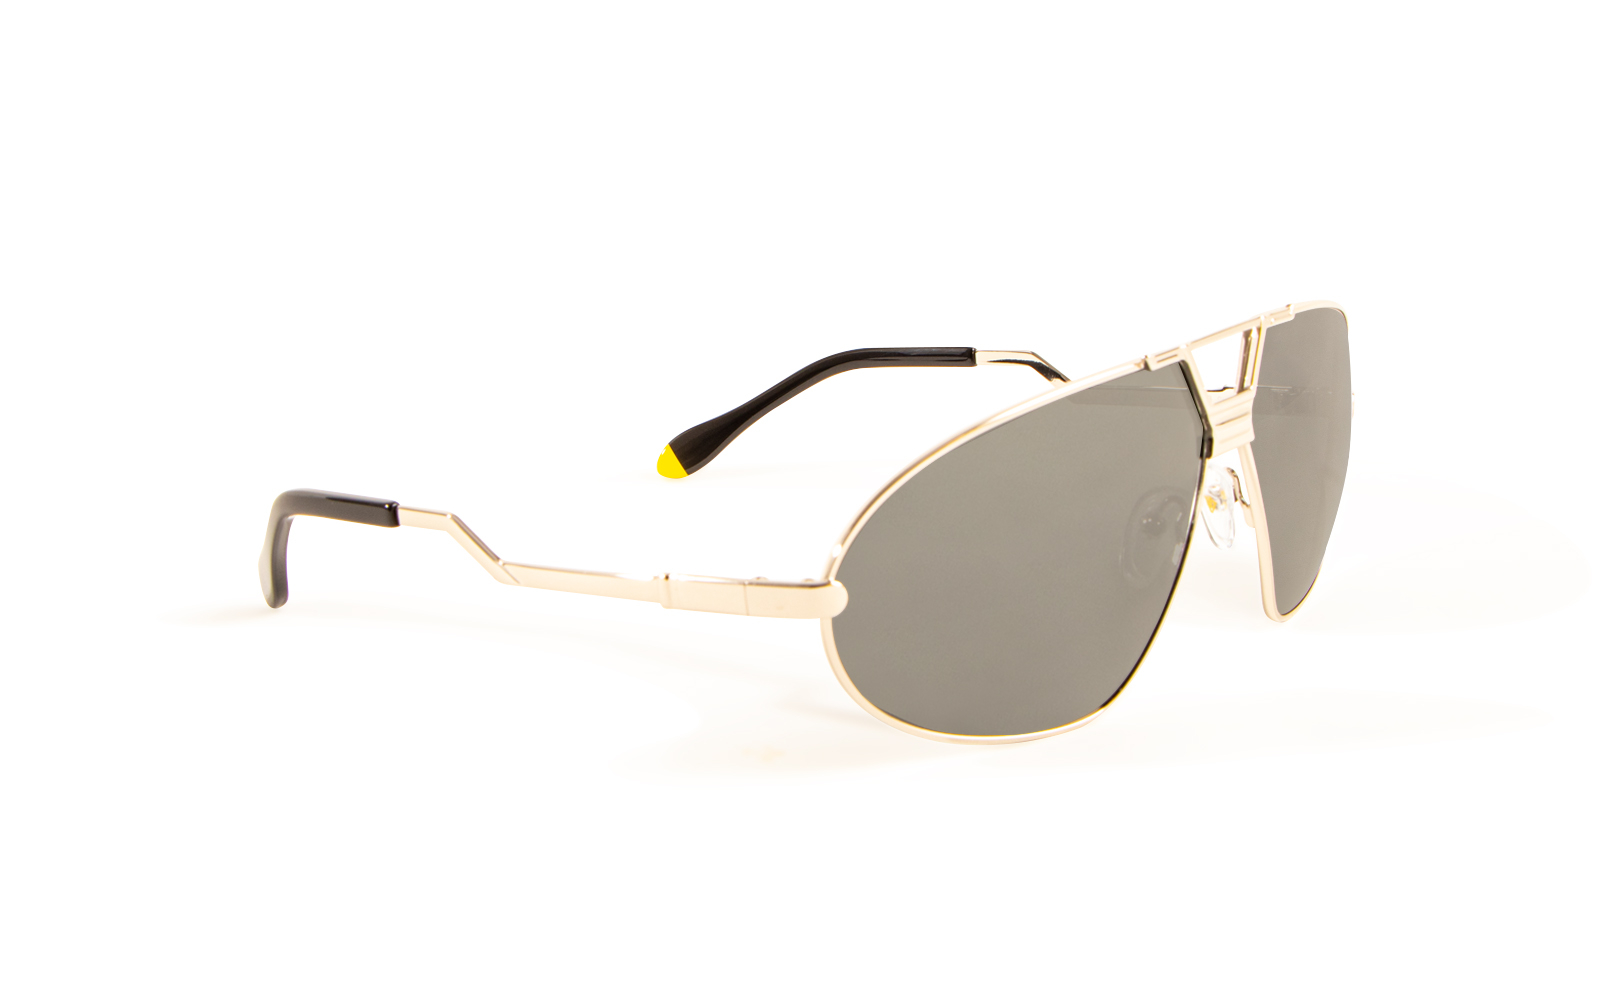 Invicta Men's Bolt Shield Sunglasses, White (24453-BOL-13-01)